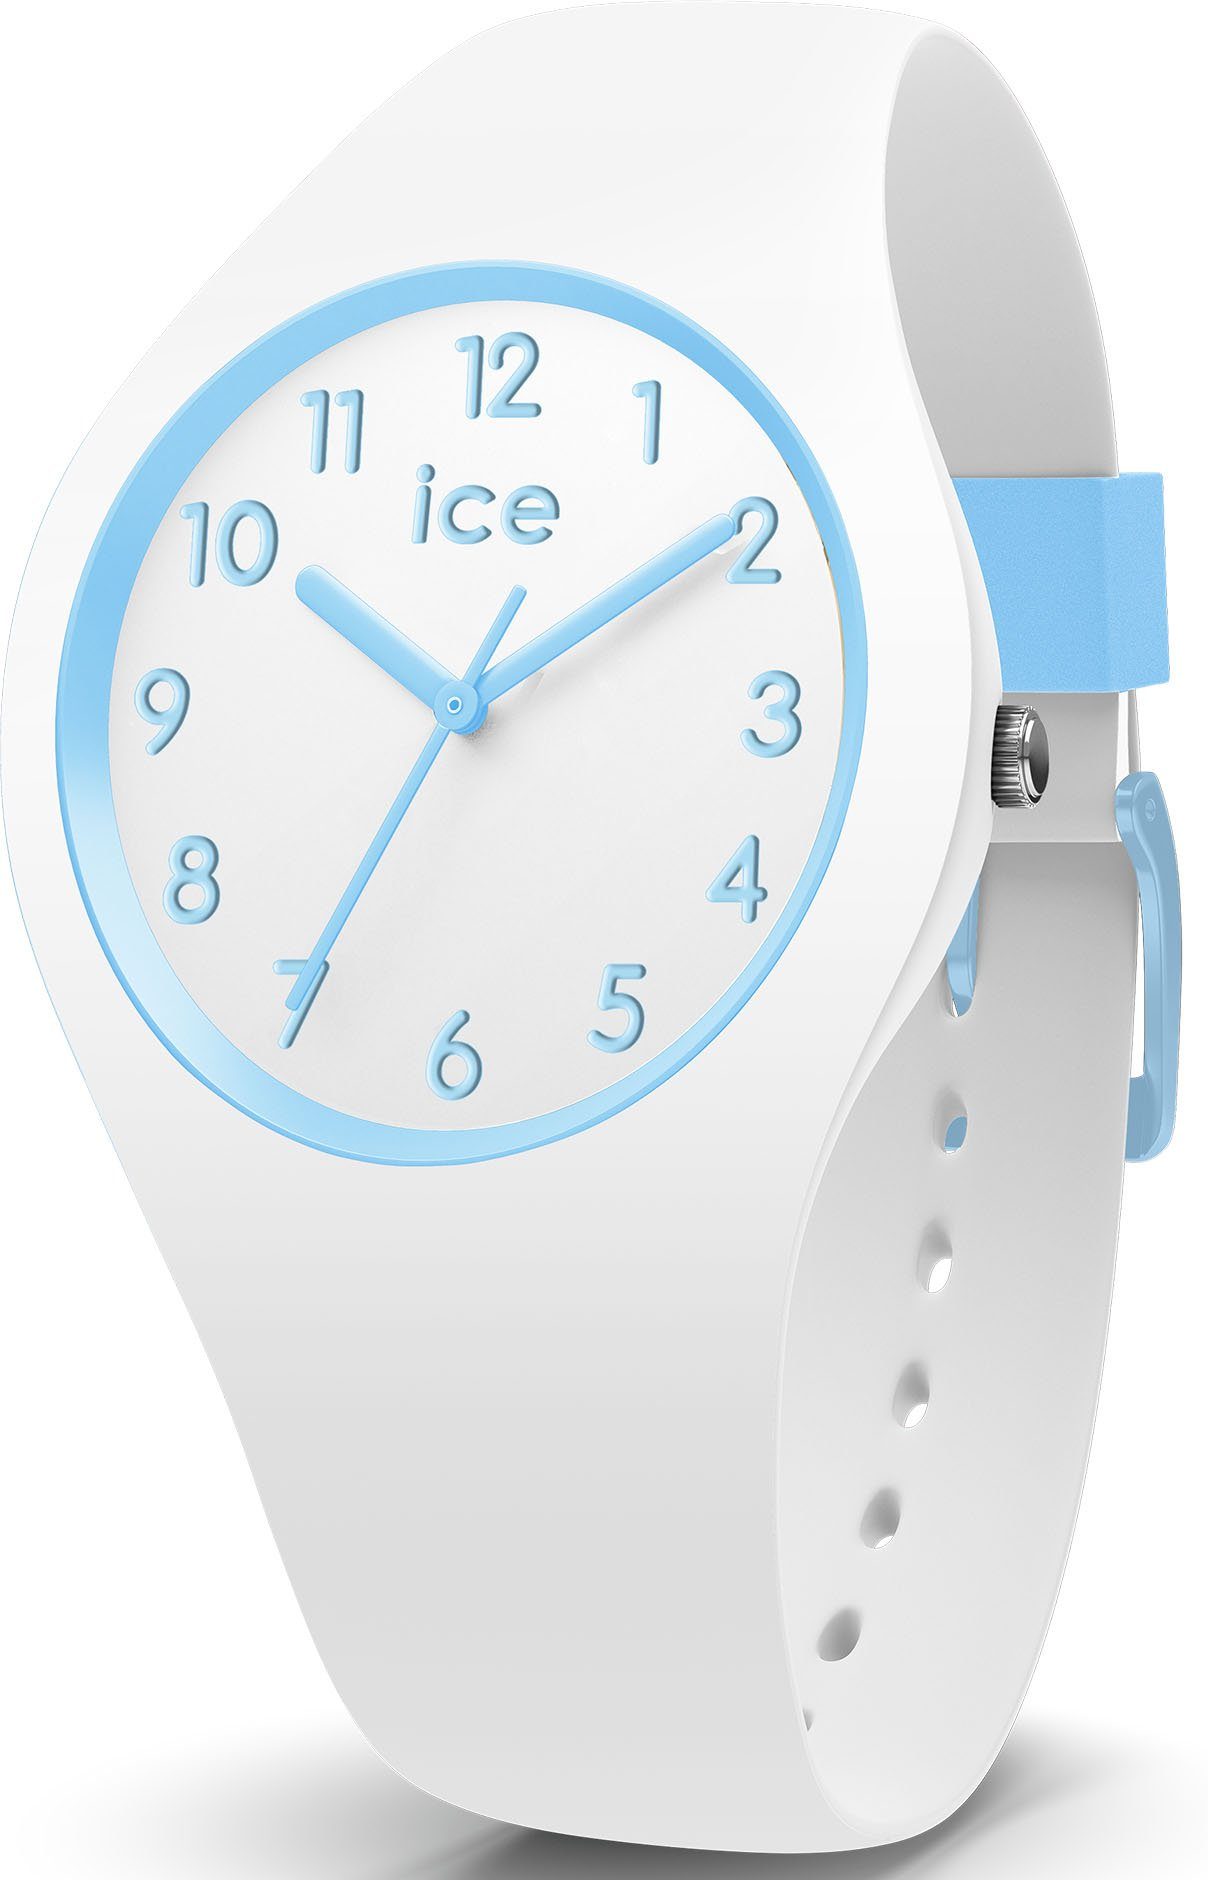 ice-watch Quarzuhr ICE ola kids, als Geschenk 014425, auch ideal